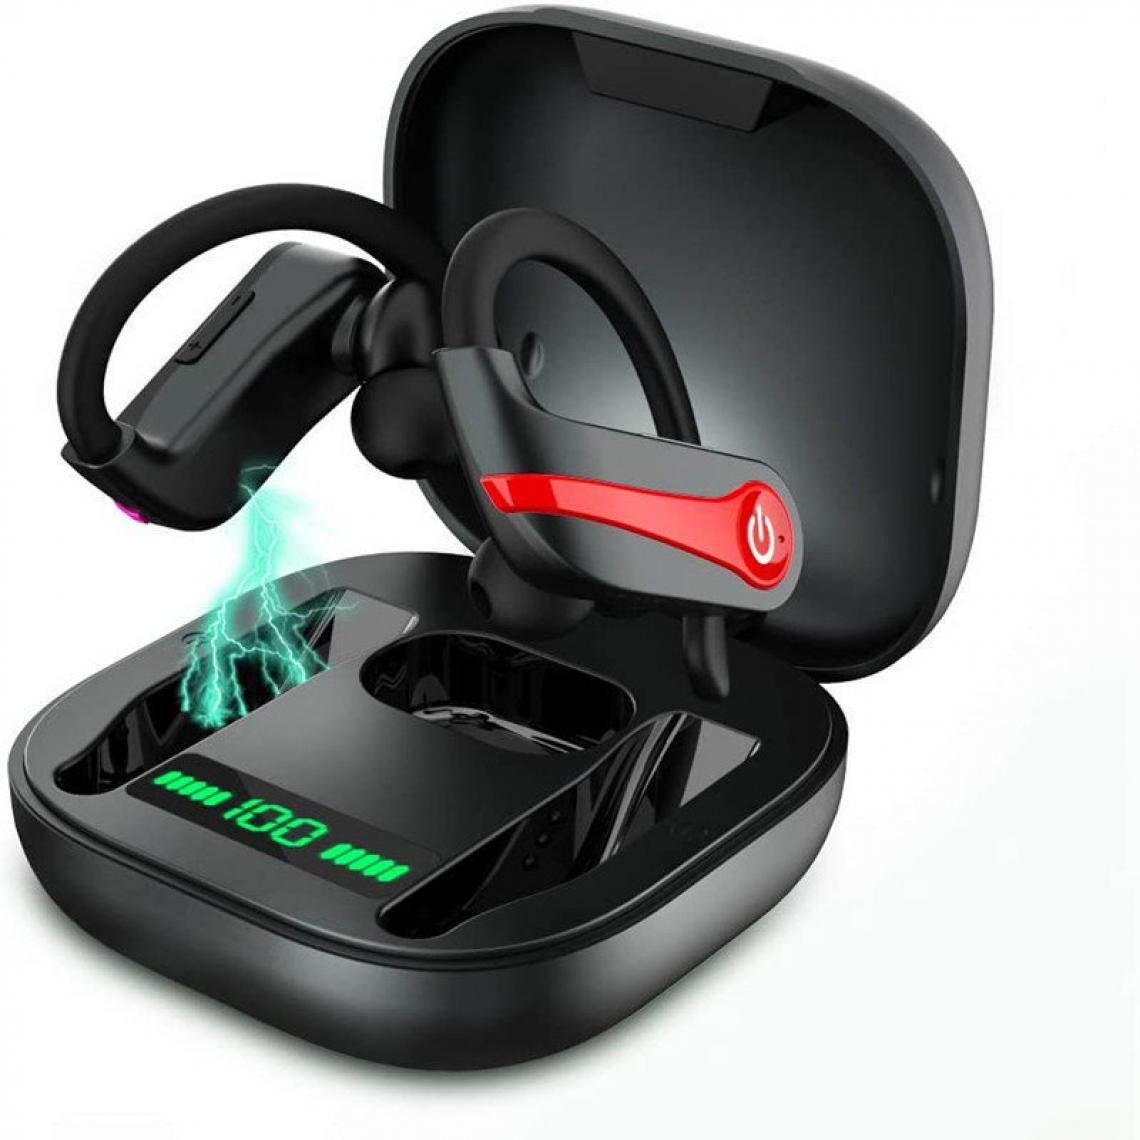 Chrono - Ecouteur Bluetooth 5.1, Sport Ecouteurs sans Fil, Oreillette Bluetooth avec Anti-Bruit CVC 8.0, IPX7 Étanche Sport Ecouteur avec Micro, 40h d'Autonomie, Appariement Automatique, Affichage LED(Noir) - Ecouteurs intra-auriculaires